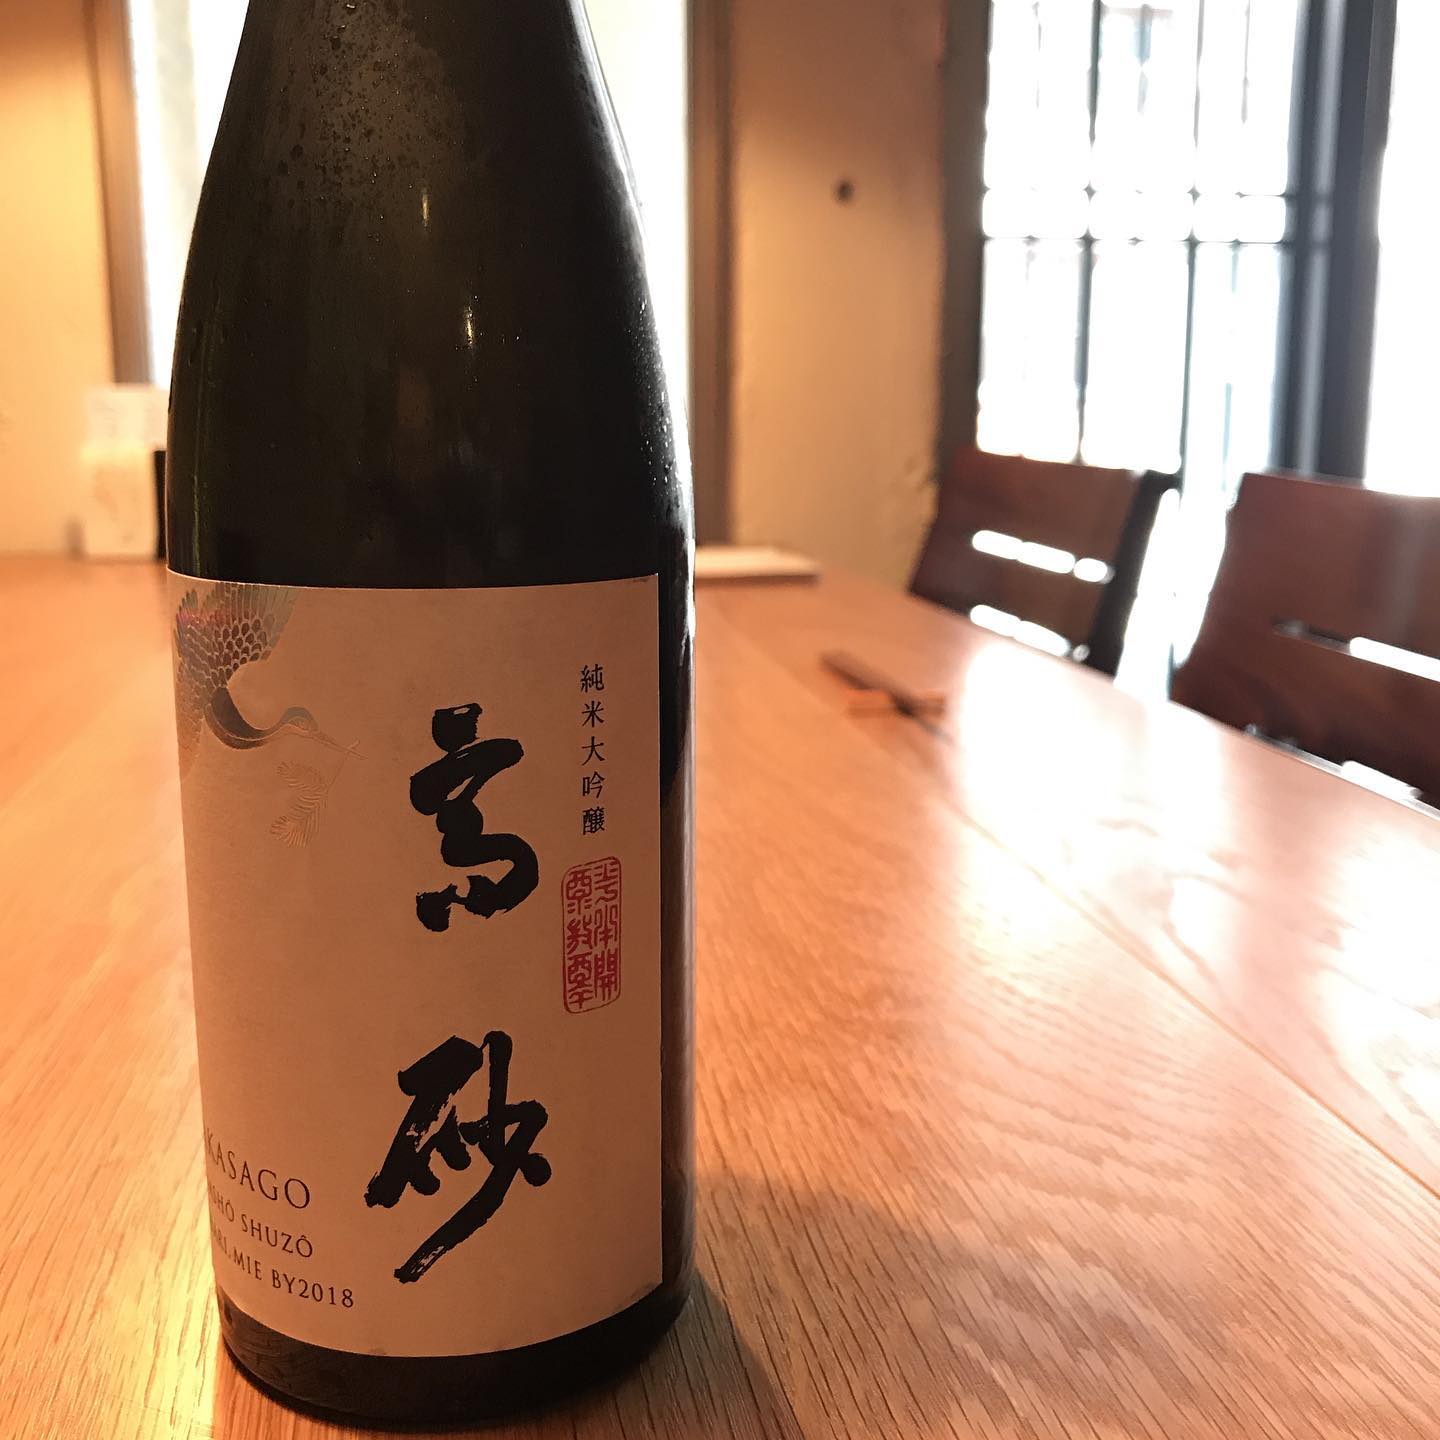 木屋正酒造が醸す「高砂 松喰鶴 純米大吟醸」。今日からグラスで開けてます。#ラディコングラスでご提供#無くなり次第終了#イルフェソワフ#炭とワインと日本酒